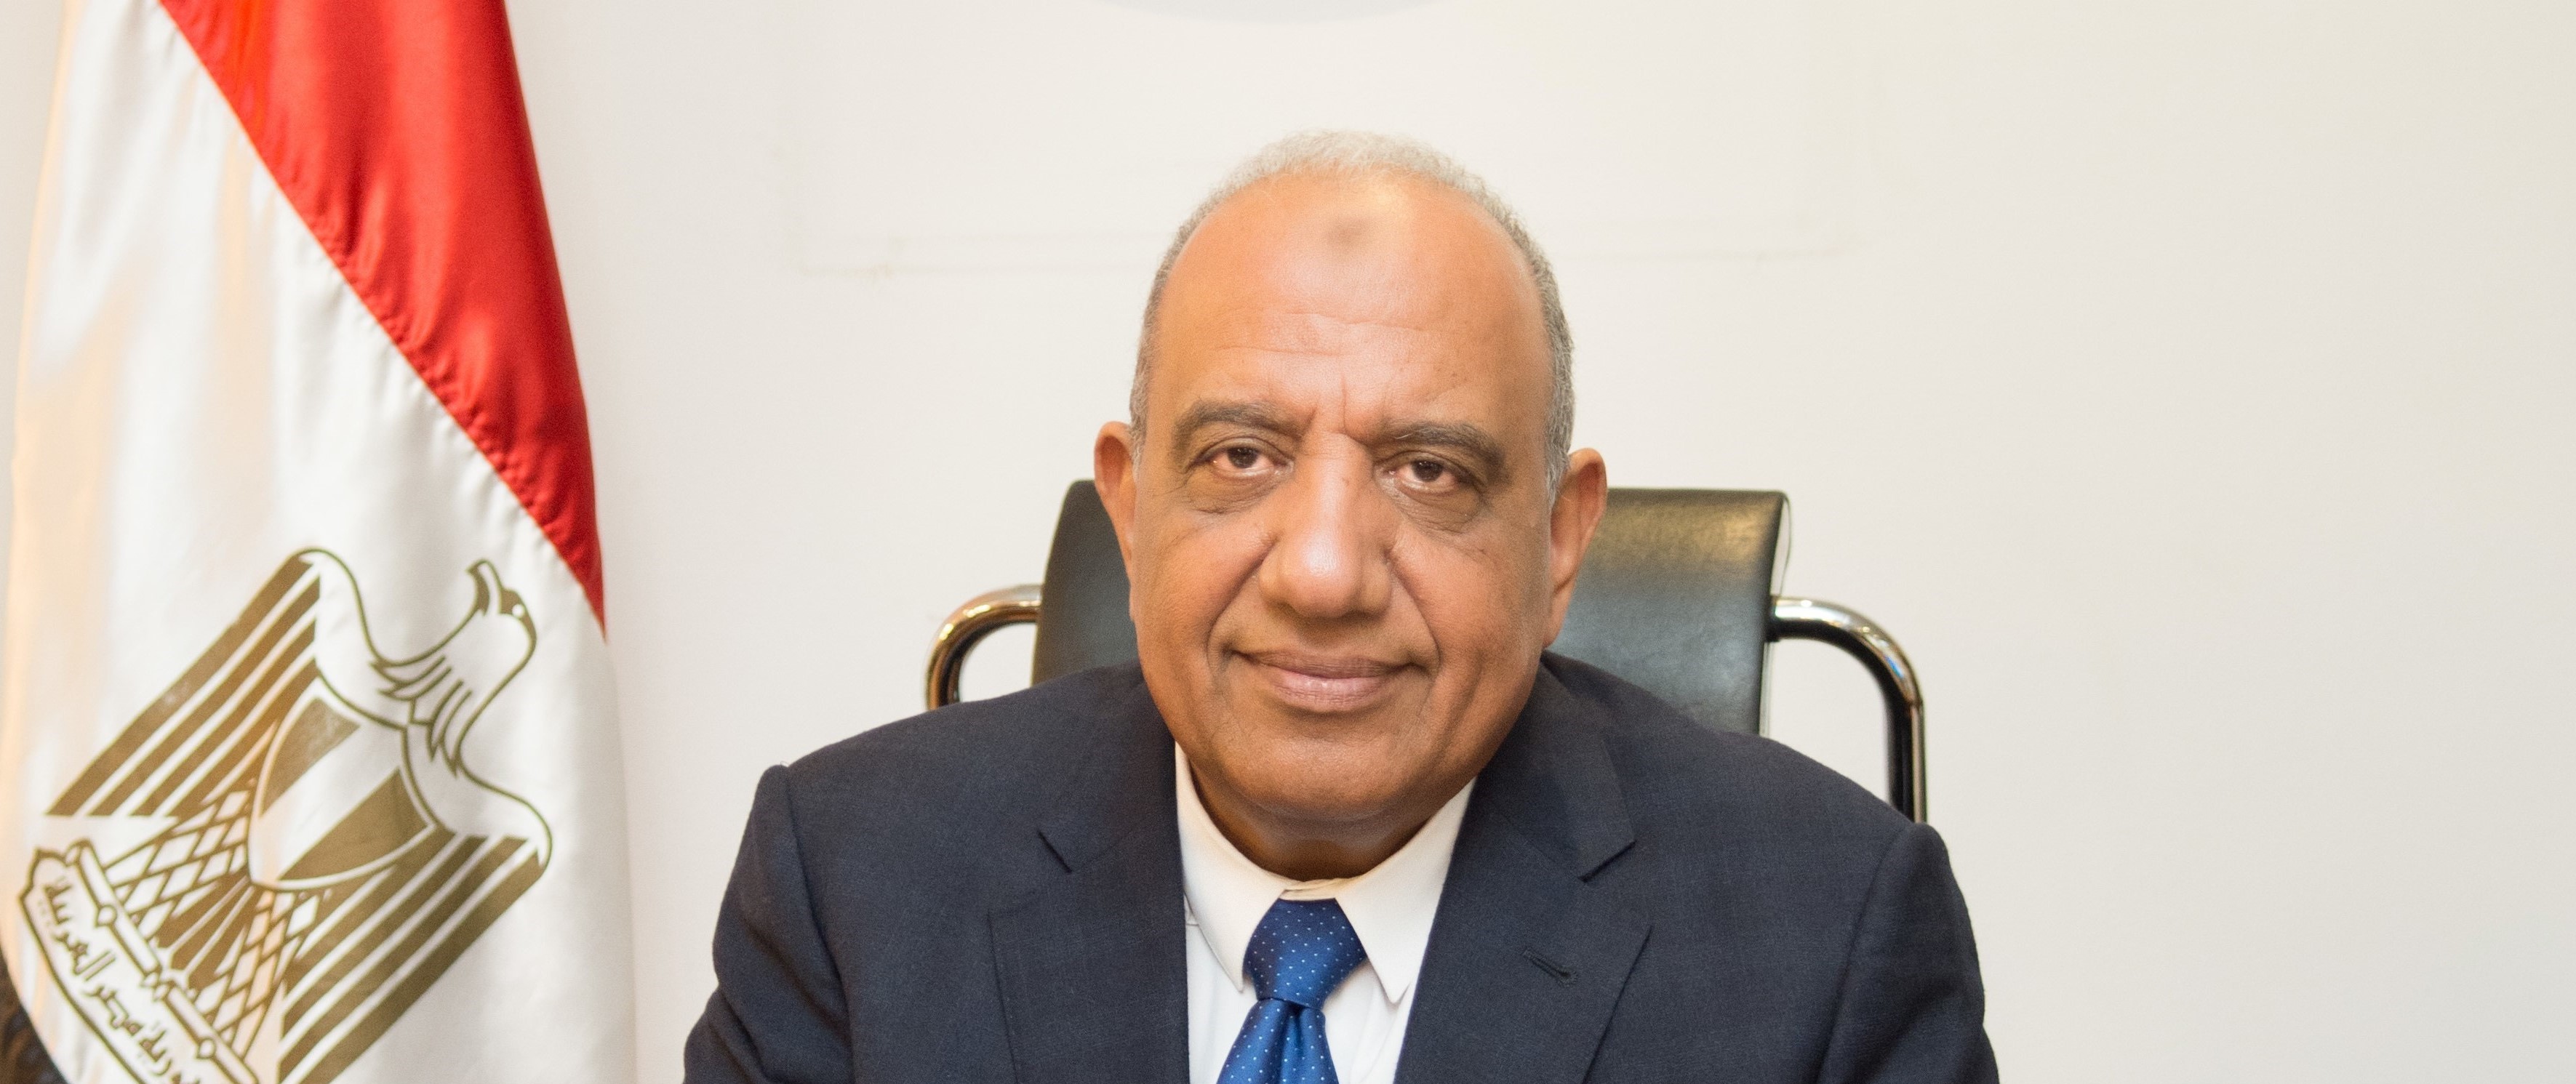 الدكتور محمود عصمت: مجمع صناعي لرفع تركيز الفوسفات بشراكة هندية مصرية